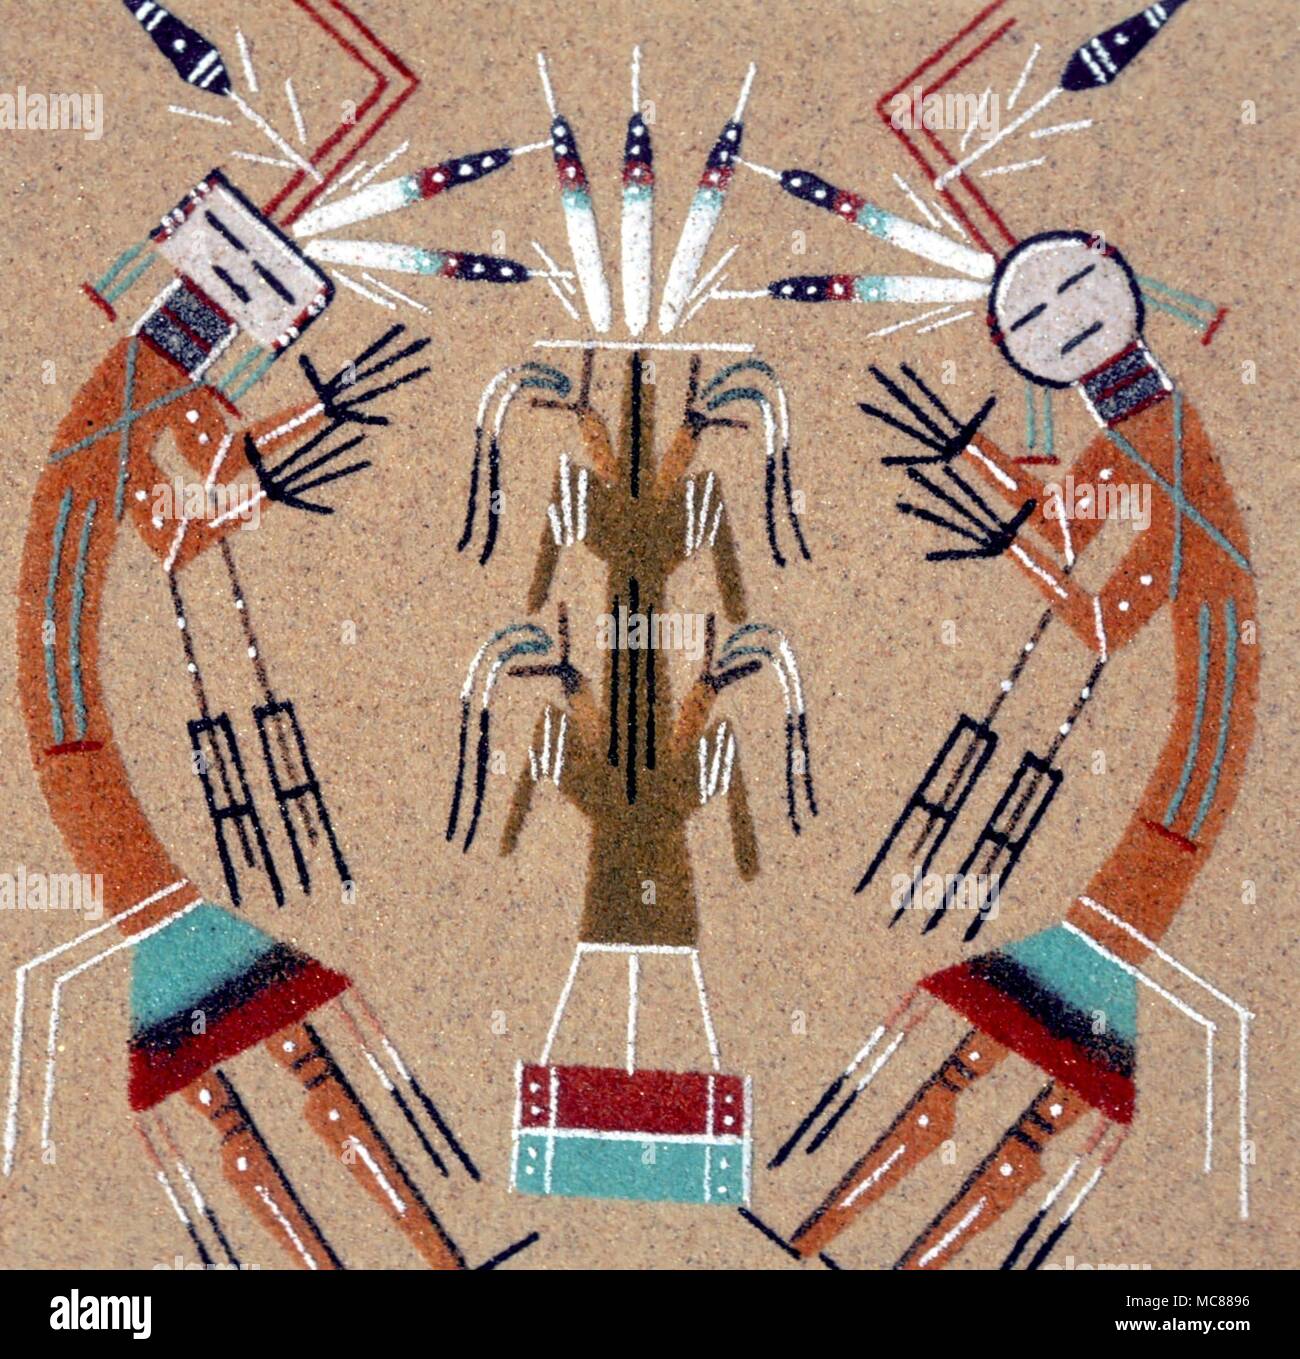 Les Indiens de l'AMÉRIQUE DU NORD - une peinture sur sable navajo rendu moderne d'un thème traditionnel Banque D'Images